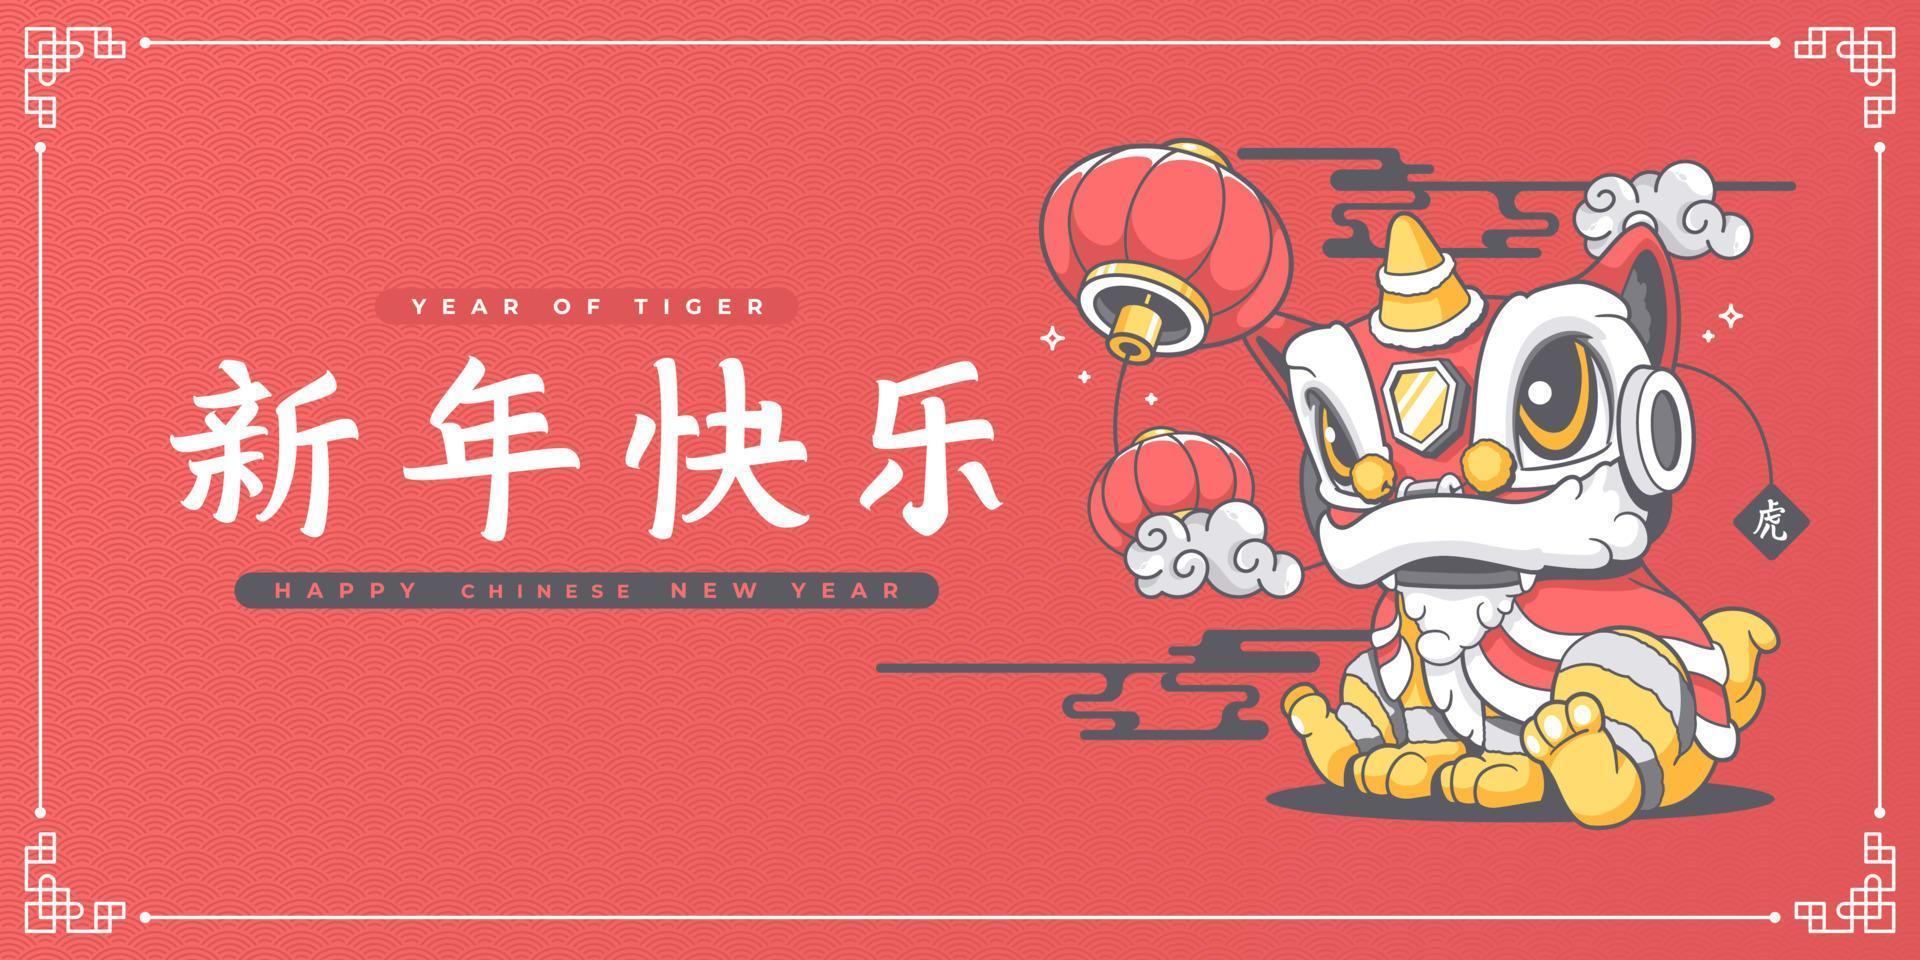 gott kinesiskt nytt år söt lejondans banner mall med kinesiska bokstäver gong xi fa cai som betyder önskar dig lycka och välstånd på engelska vektor